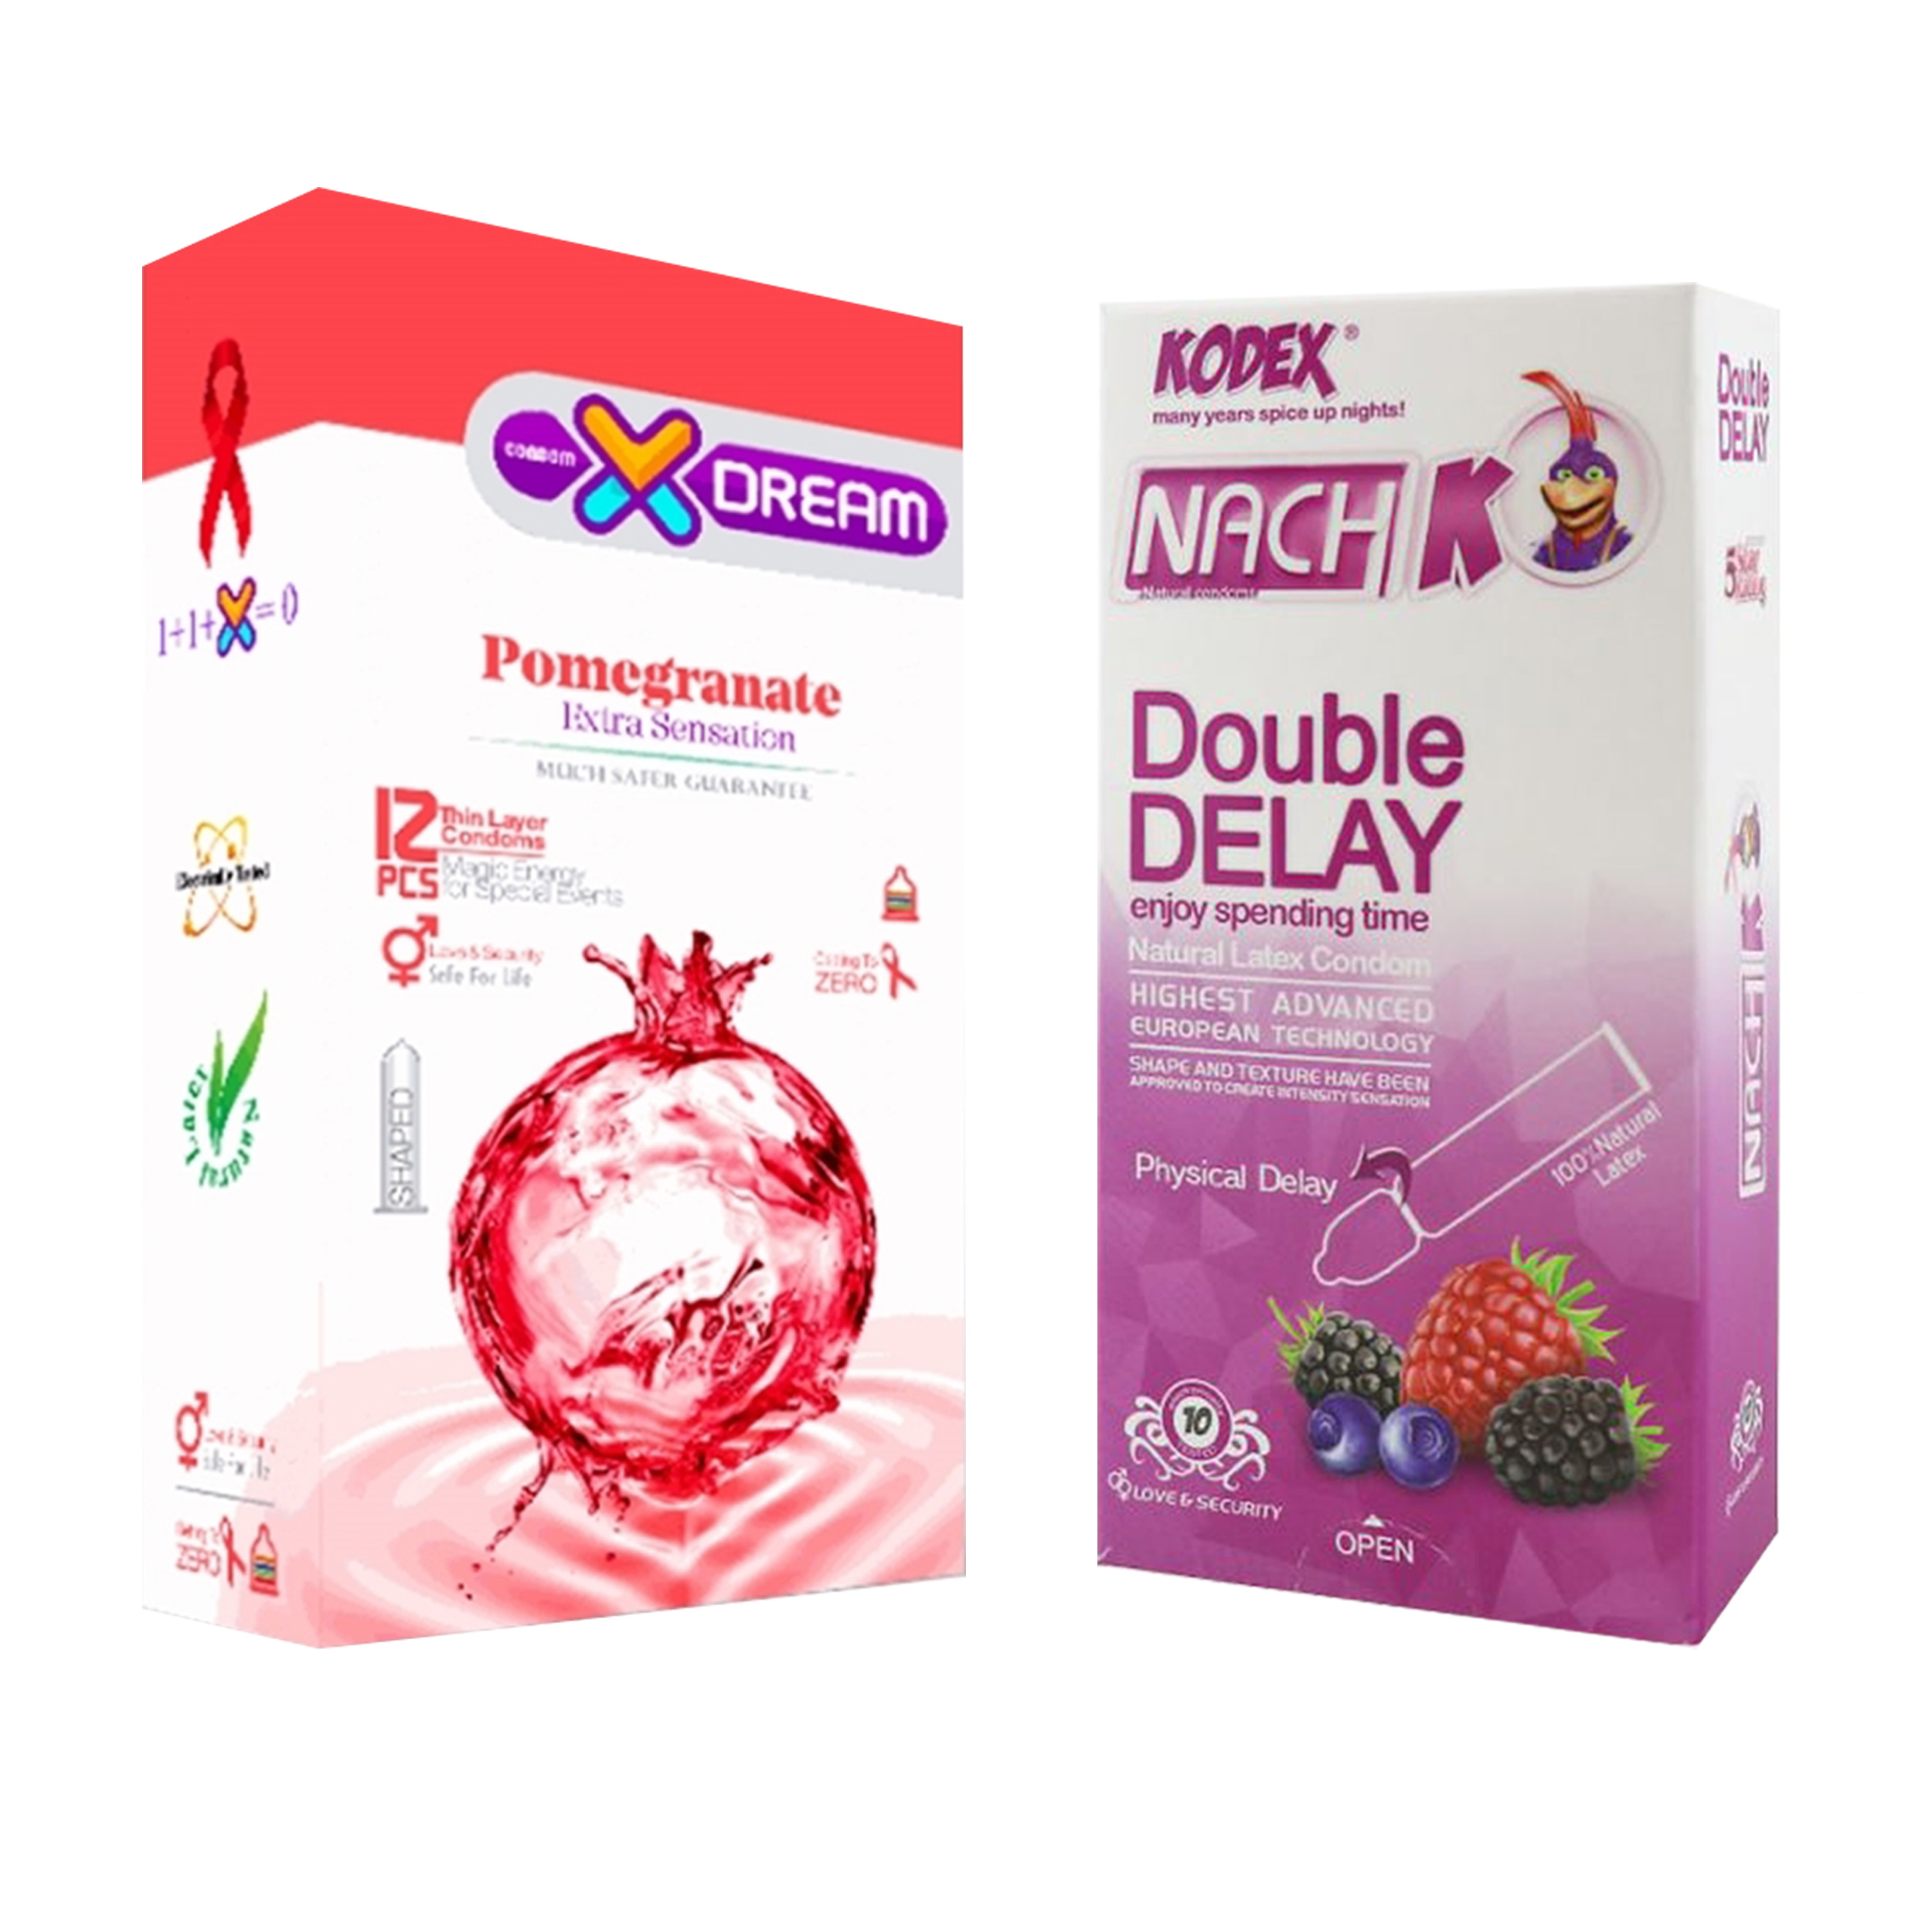 کاندوم ایکس دریم مدل Pomegranate بسته 12 عددی به همراه کاندوم تاخیری کدکس مدل Double Delay بسته 10 عددی